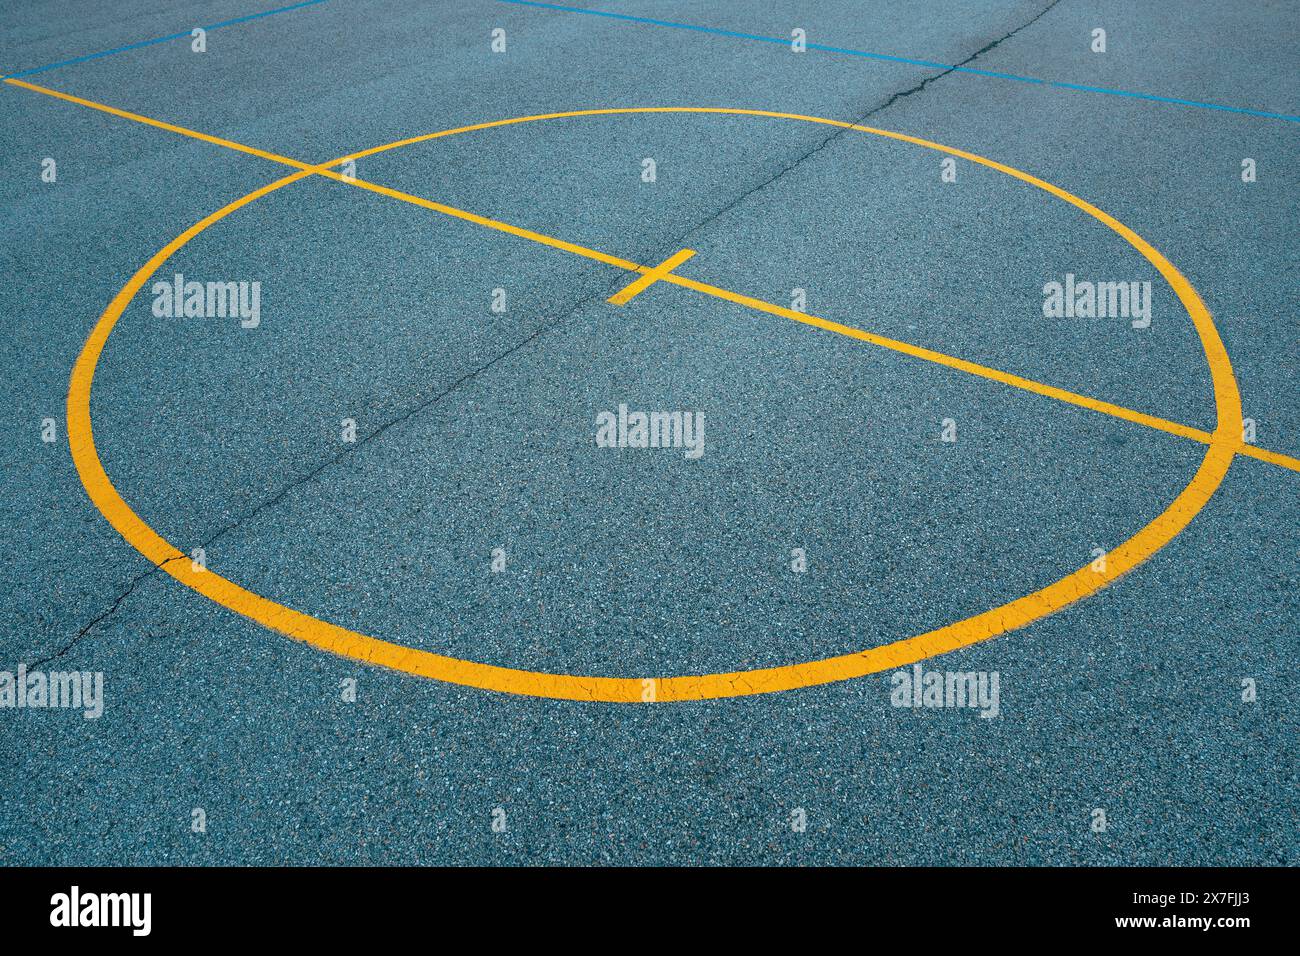 Mittelkreis auf den Linien und Markierungen auf Betonböden im Freien, abstrakter Hintergrund des Straßenballs, selektiver Fokus Stockfoto